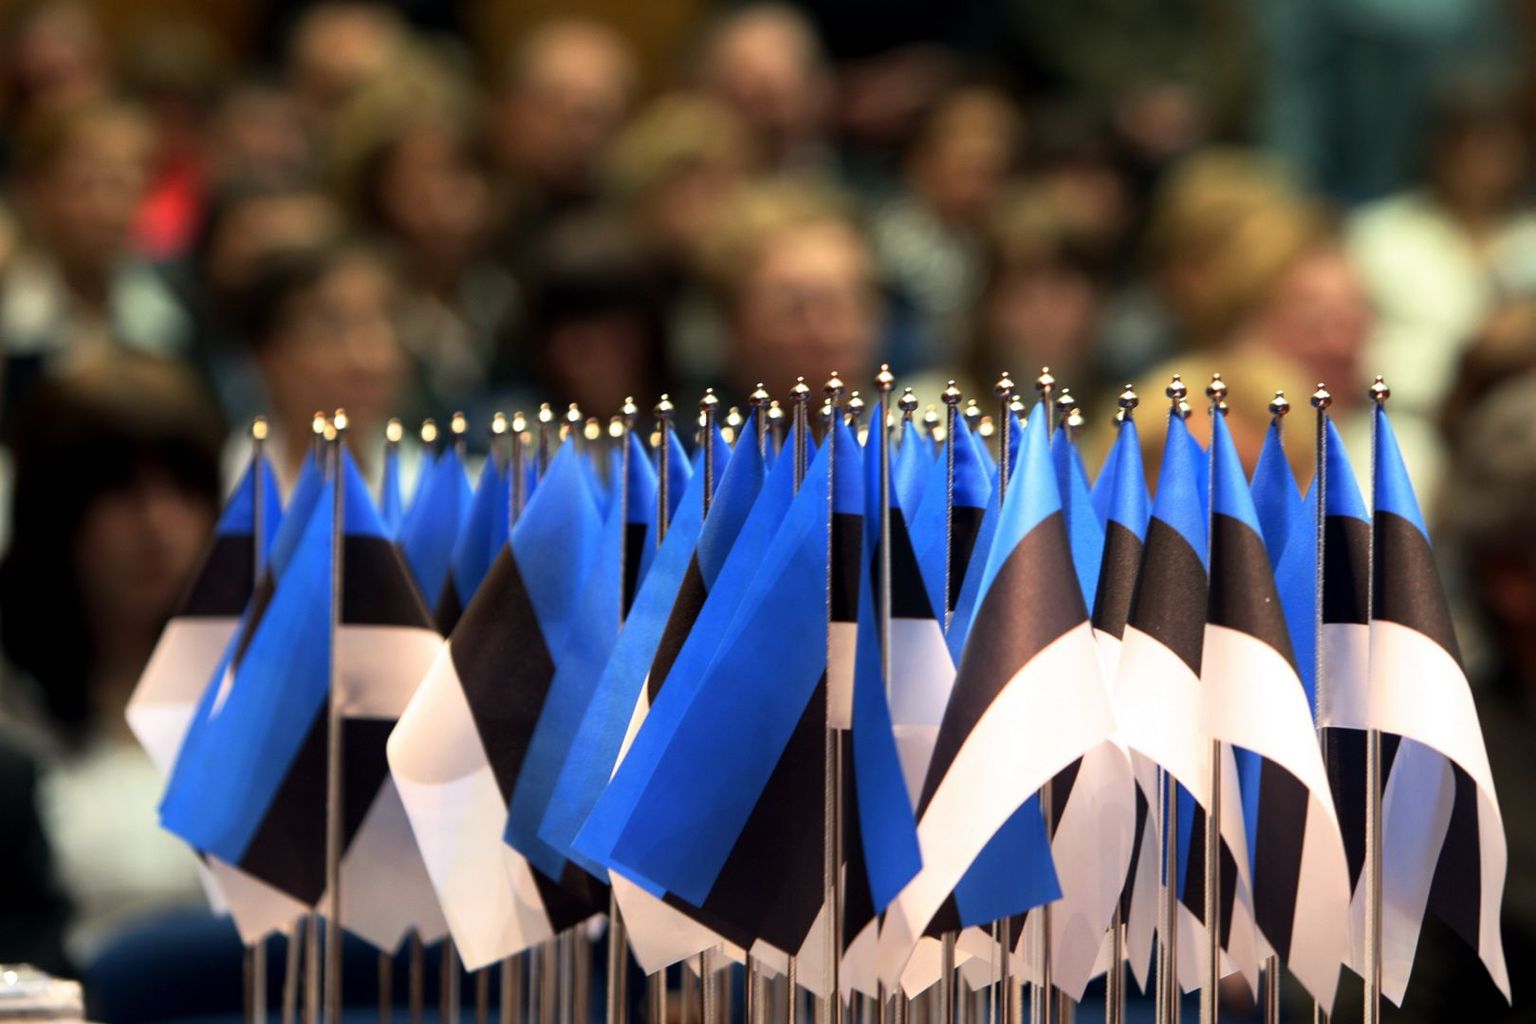 Pilt on tehtud Jõhvis toimunud Eesti kodakondustunnistuse saamise pidulikul üritusel.